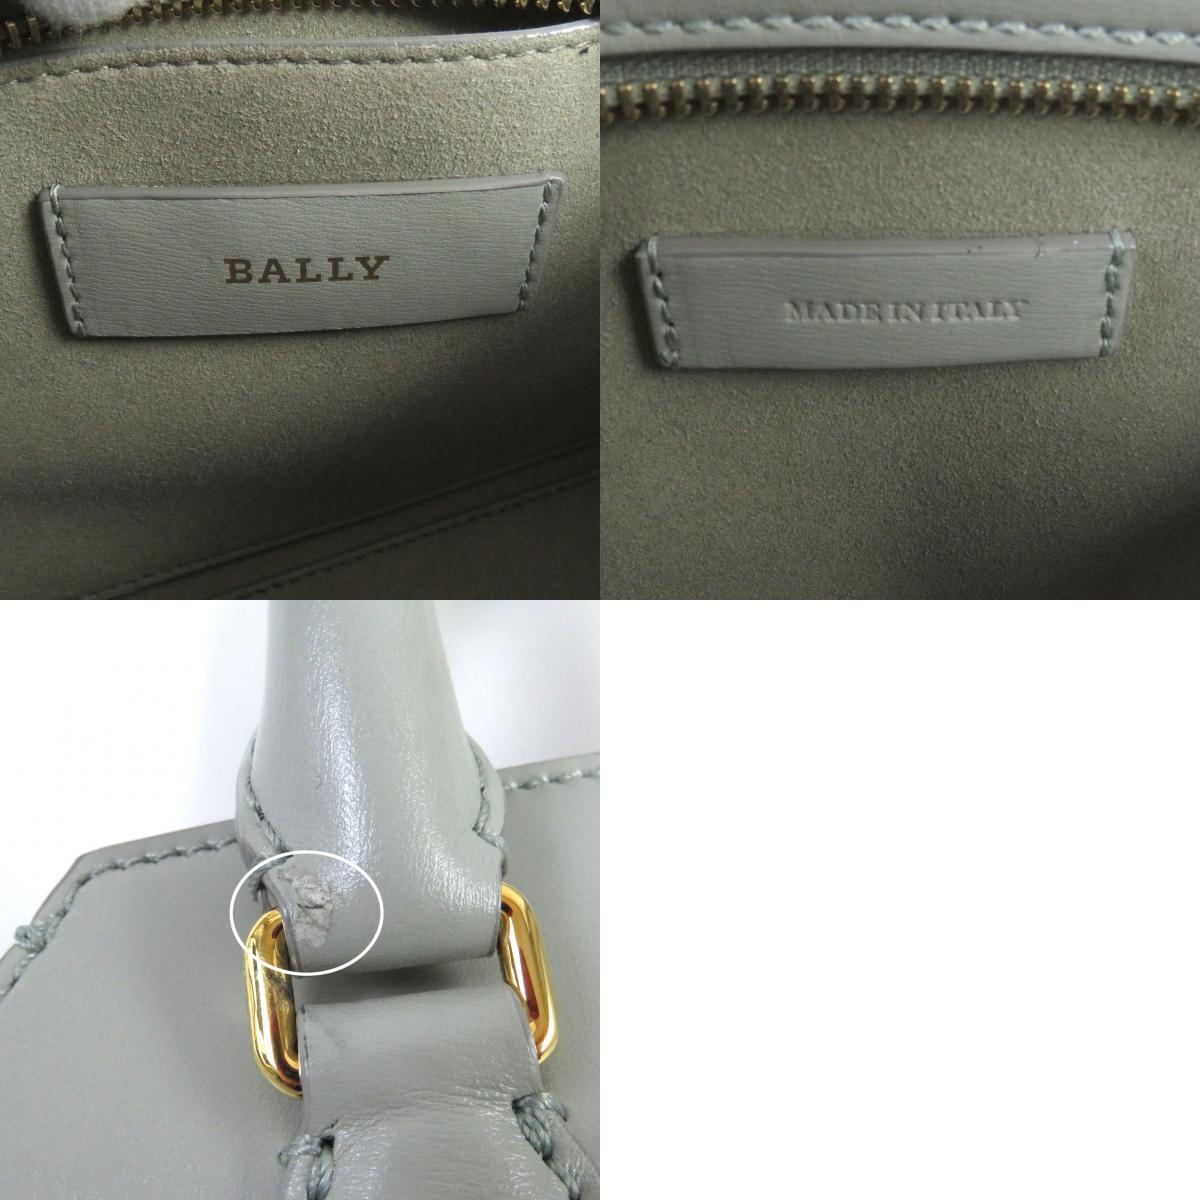  превосходный товар *BALLY Bally SOMMY.M кожа с логотипом 2WAY Mini ручная сумочка сумка на плечо серый ju Италия производства женский рекомендация *